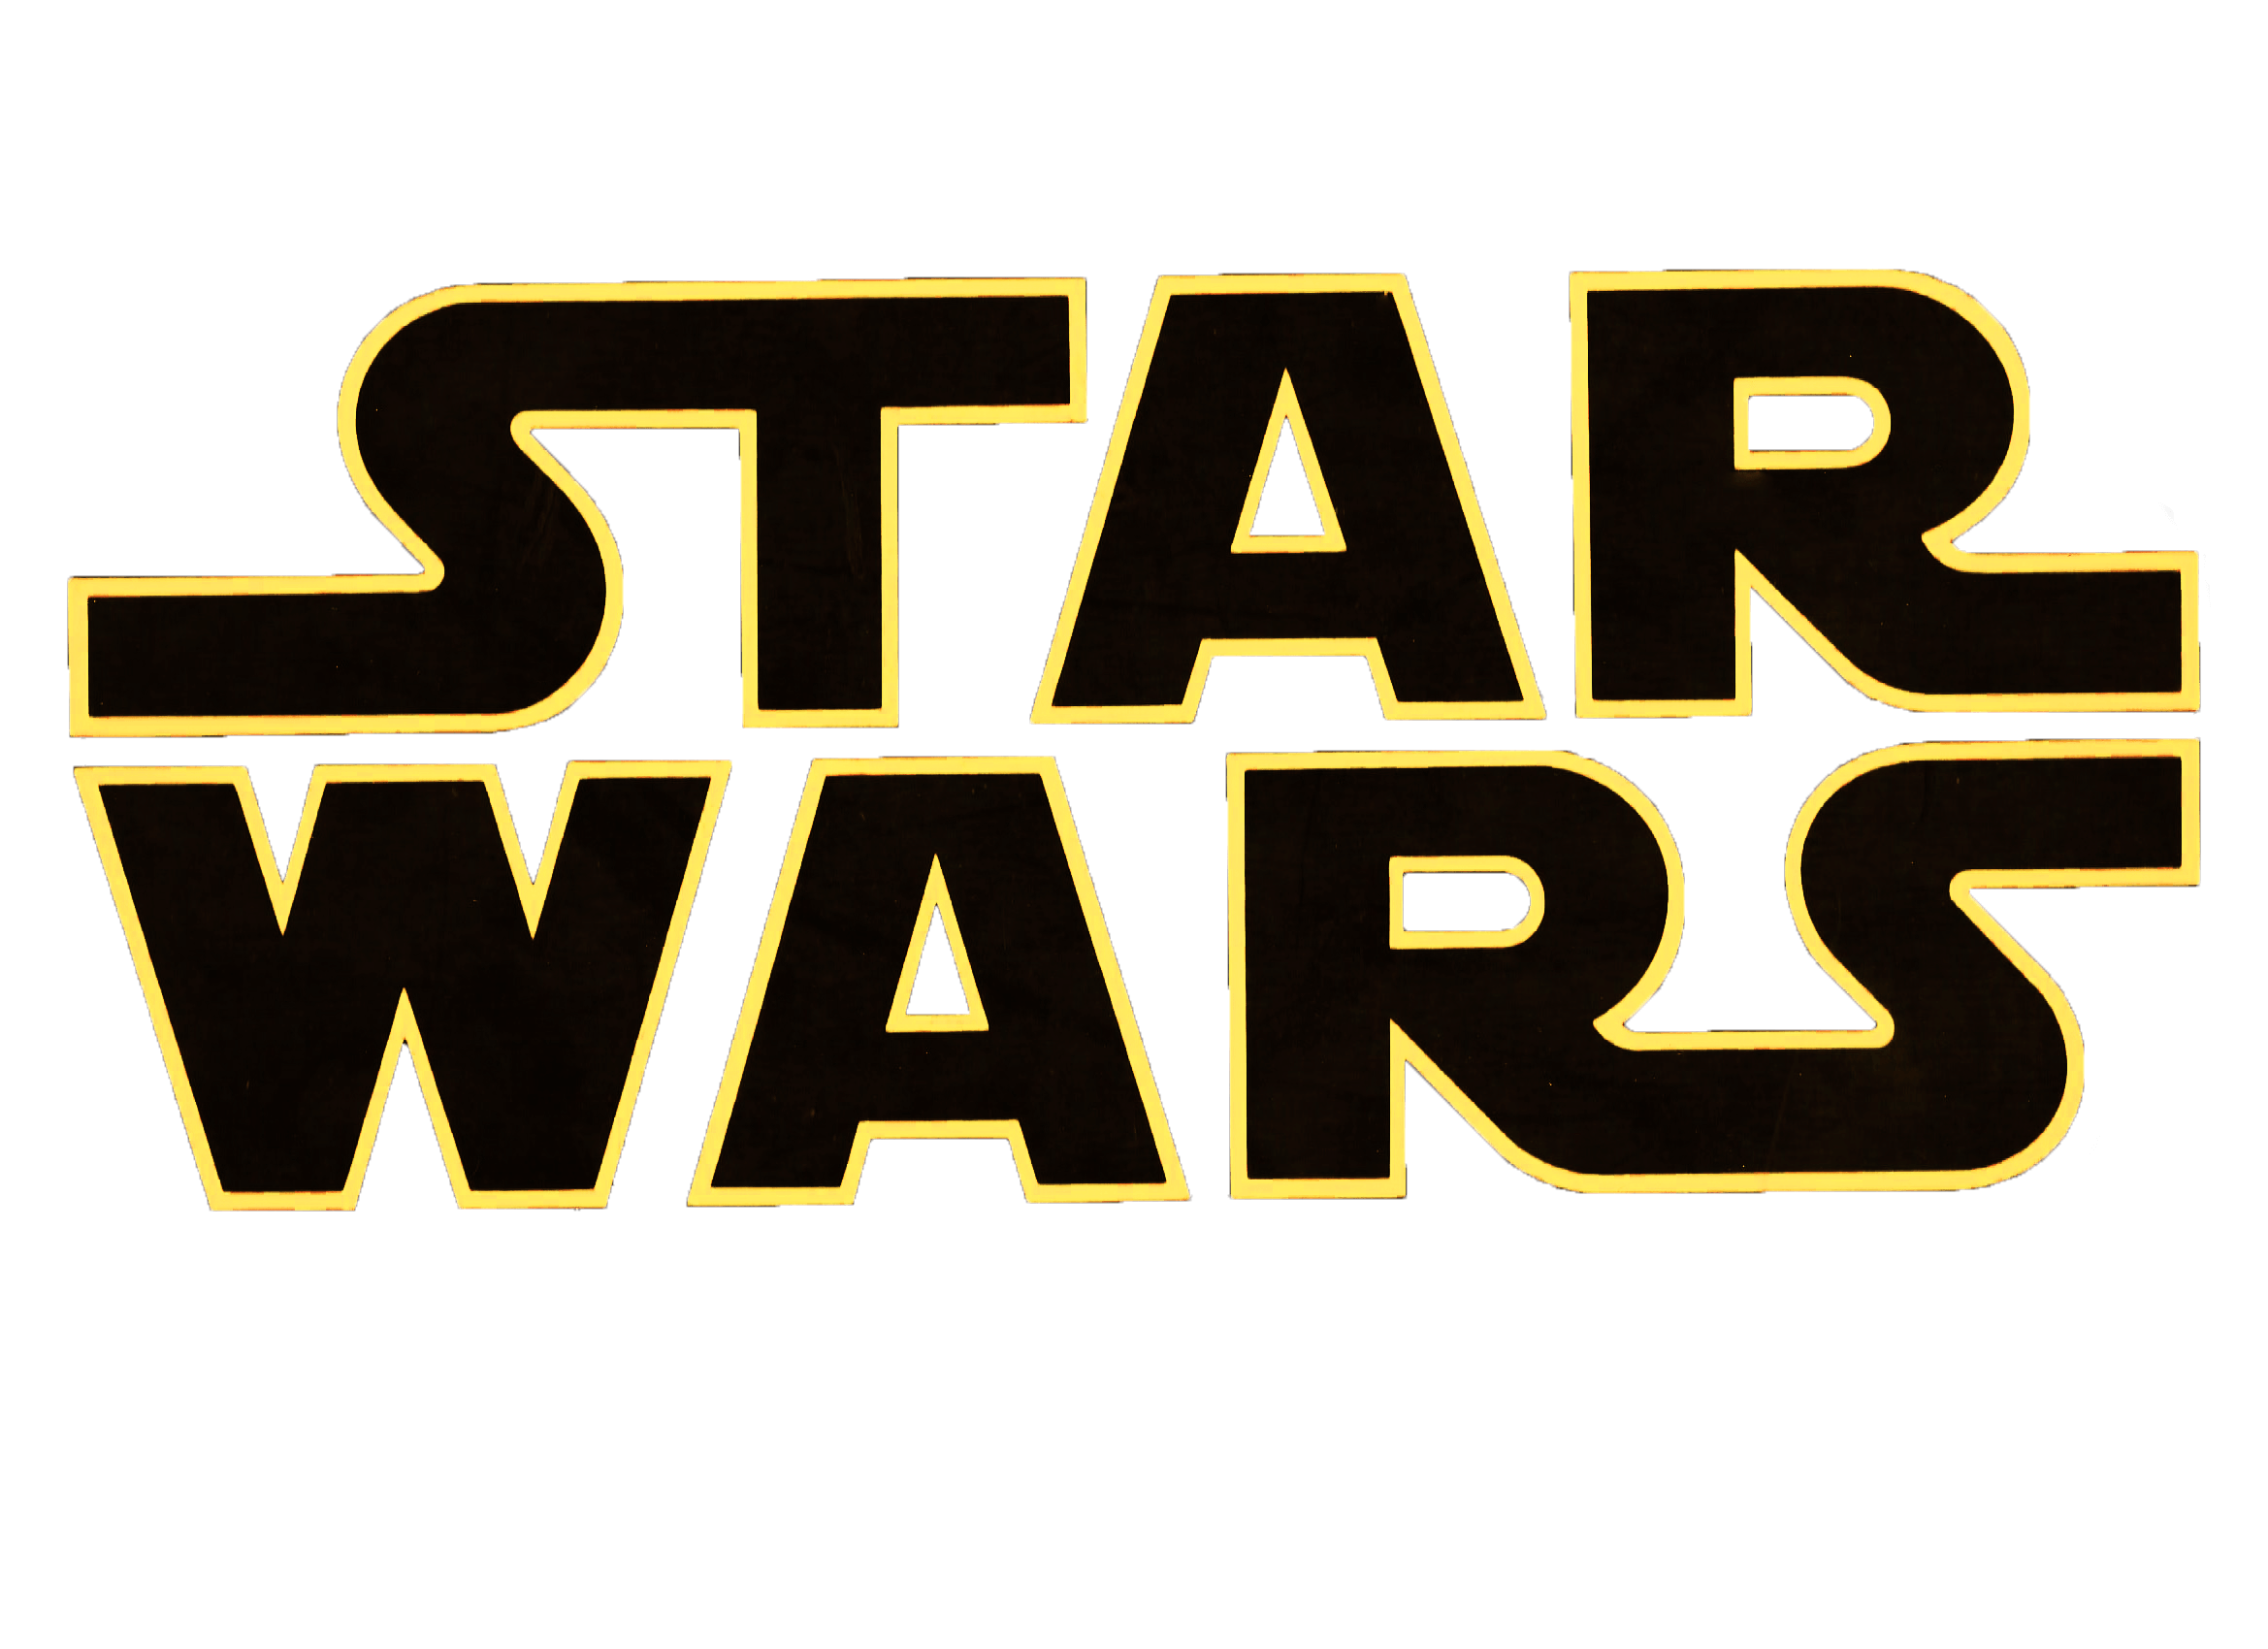 Star wars logo PNG